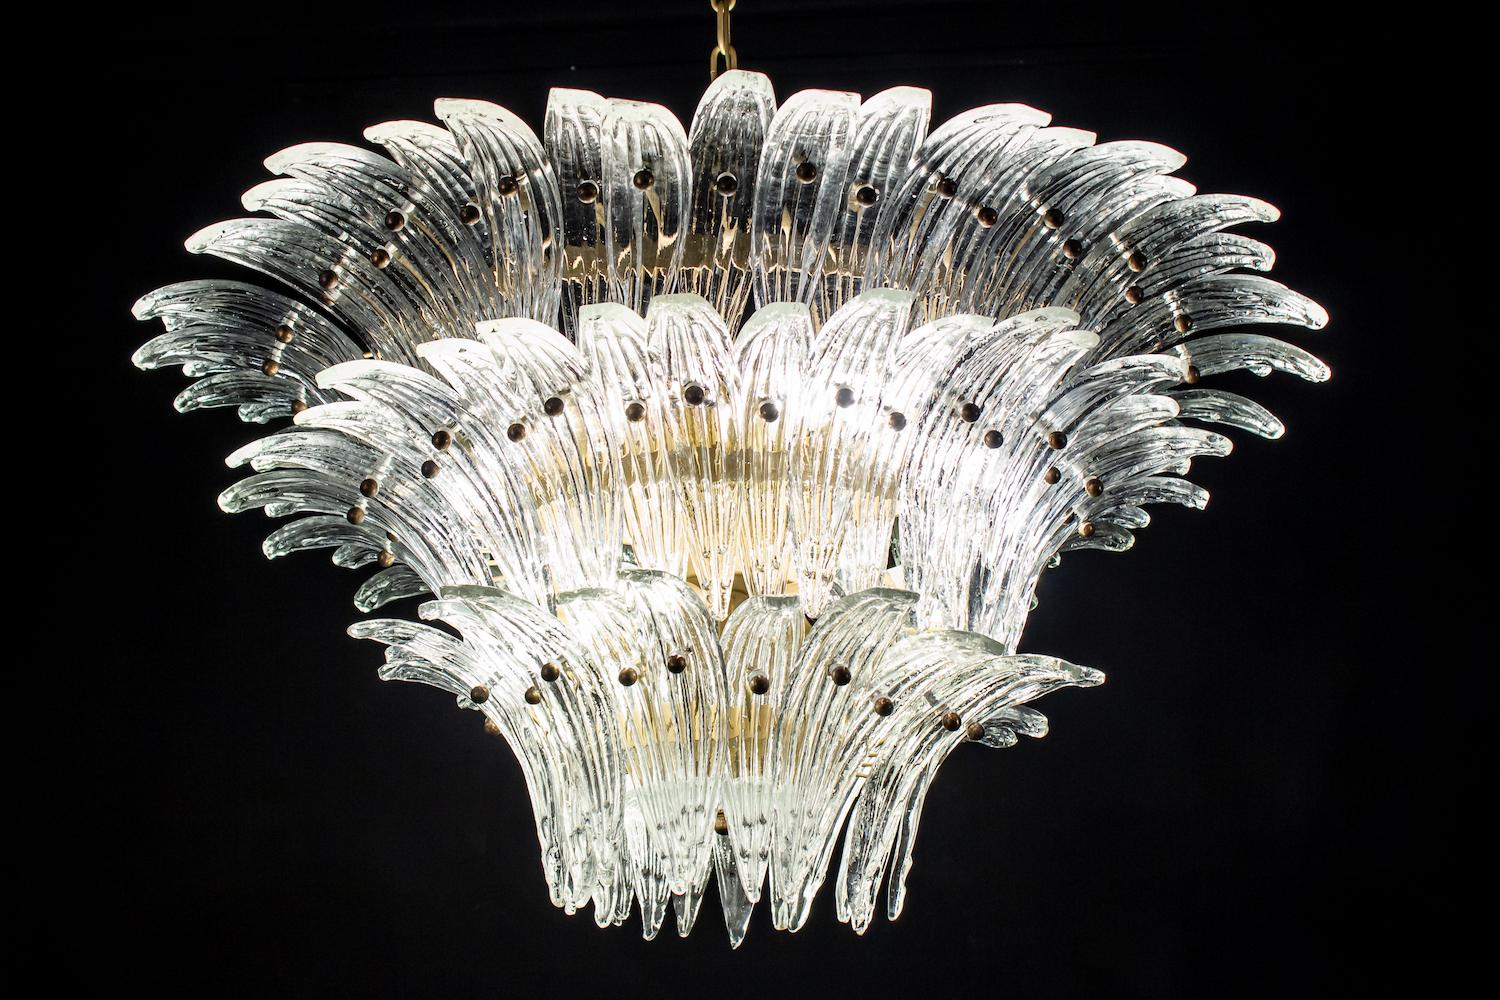 Luxuriöser Palmette-Kronleuchter aus Murano-Glas mit 94 original Murano  Kristallgläser .
Goldfarbener Metallrahmen.
Erhältlich auch ein Paar und ein Paar von Wandleuchten.
12 Glühbirnen, Größe E27
Abmessungen: Kronleuchter 43,30 Zoll (110 cm), Höhe